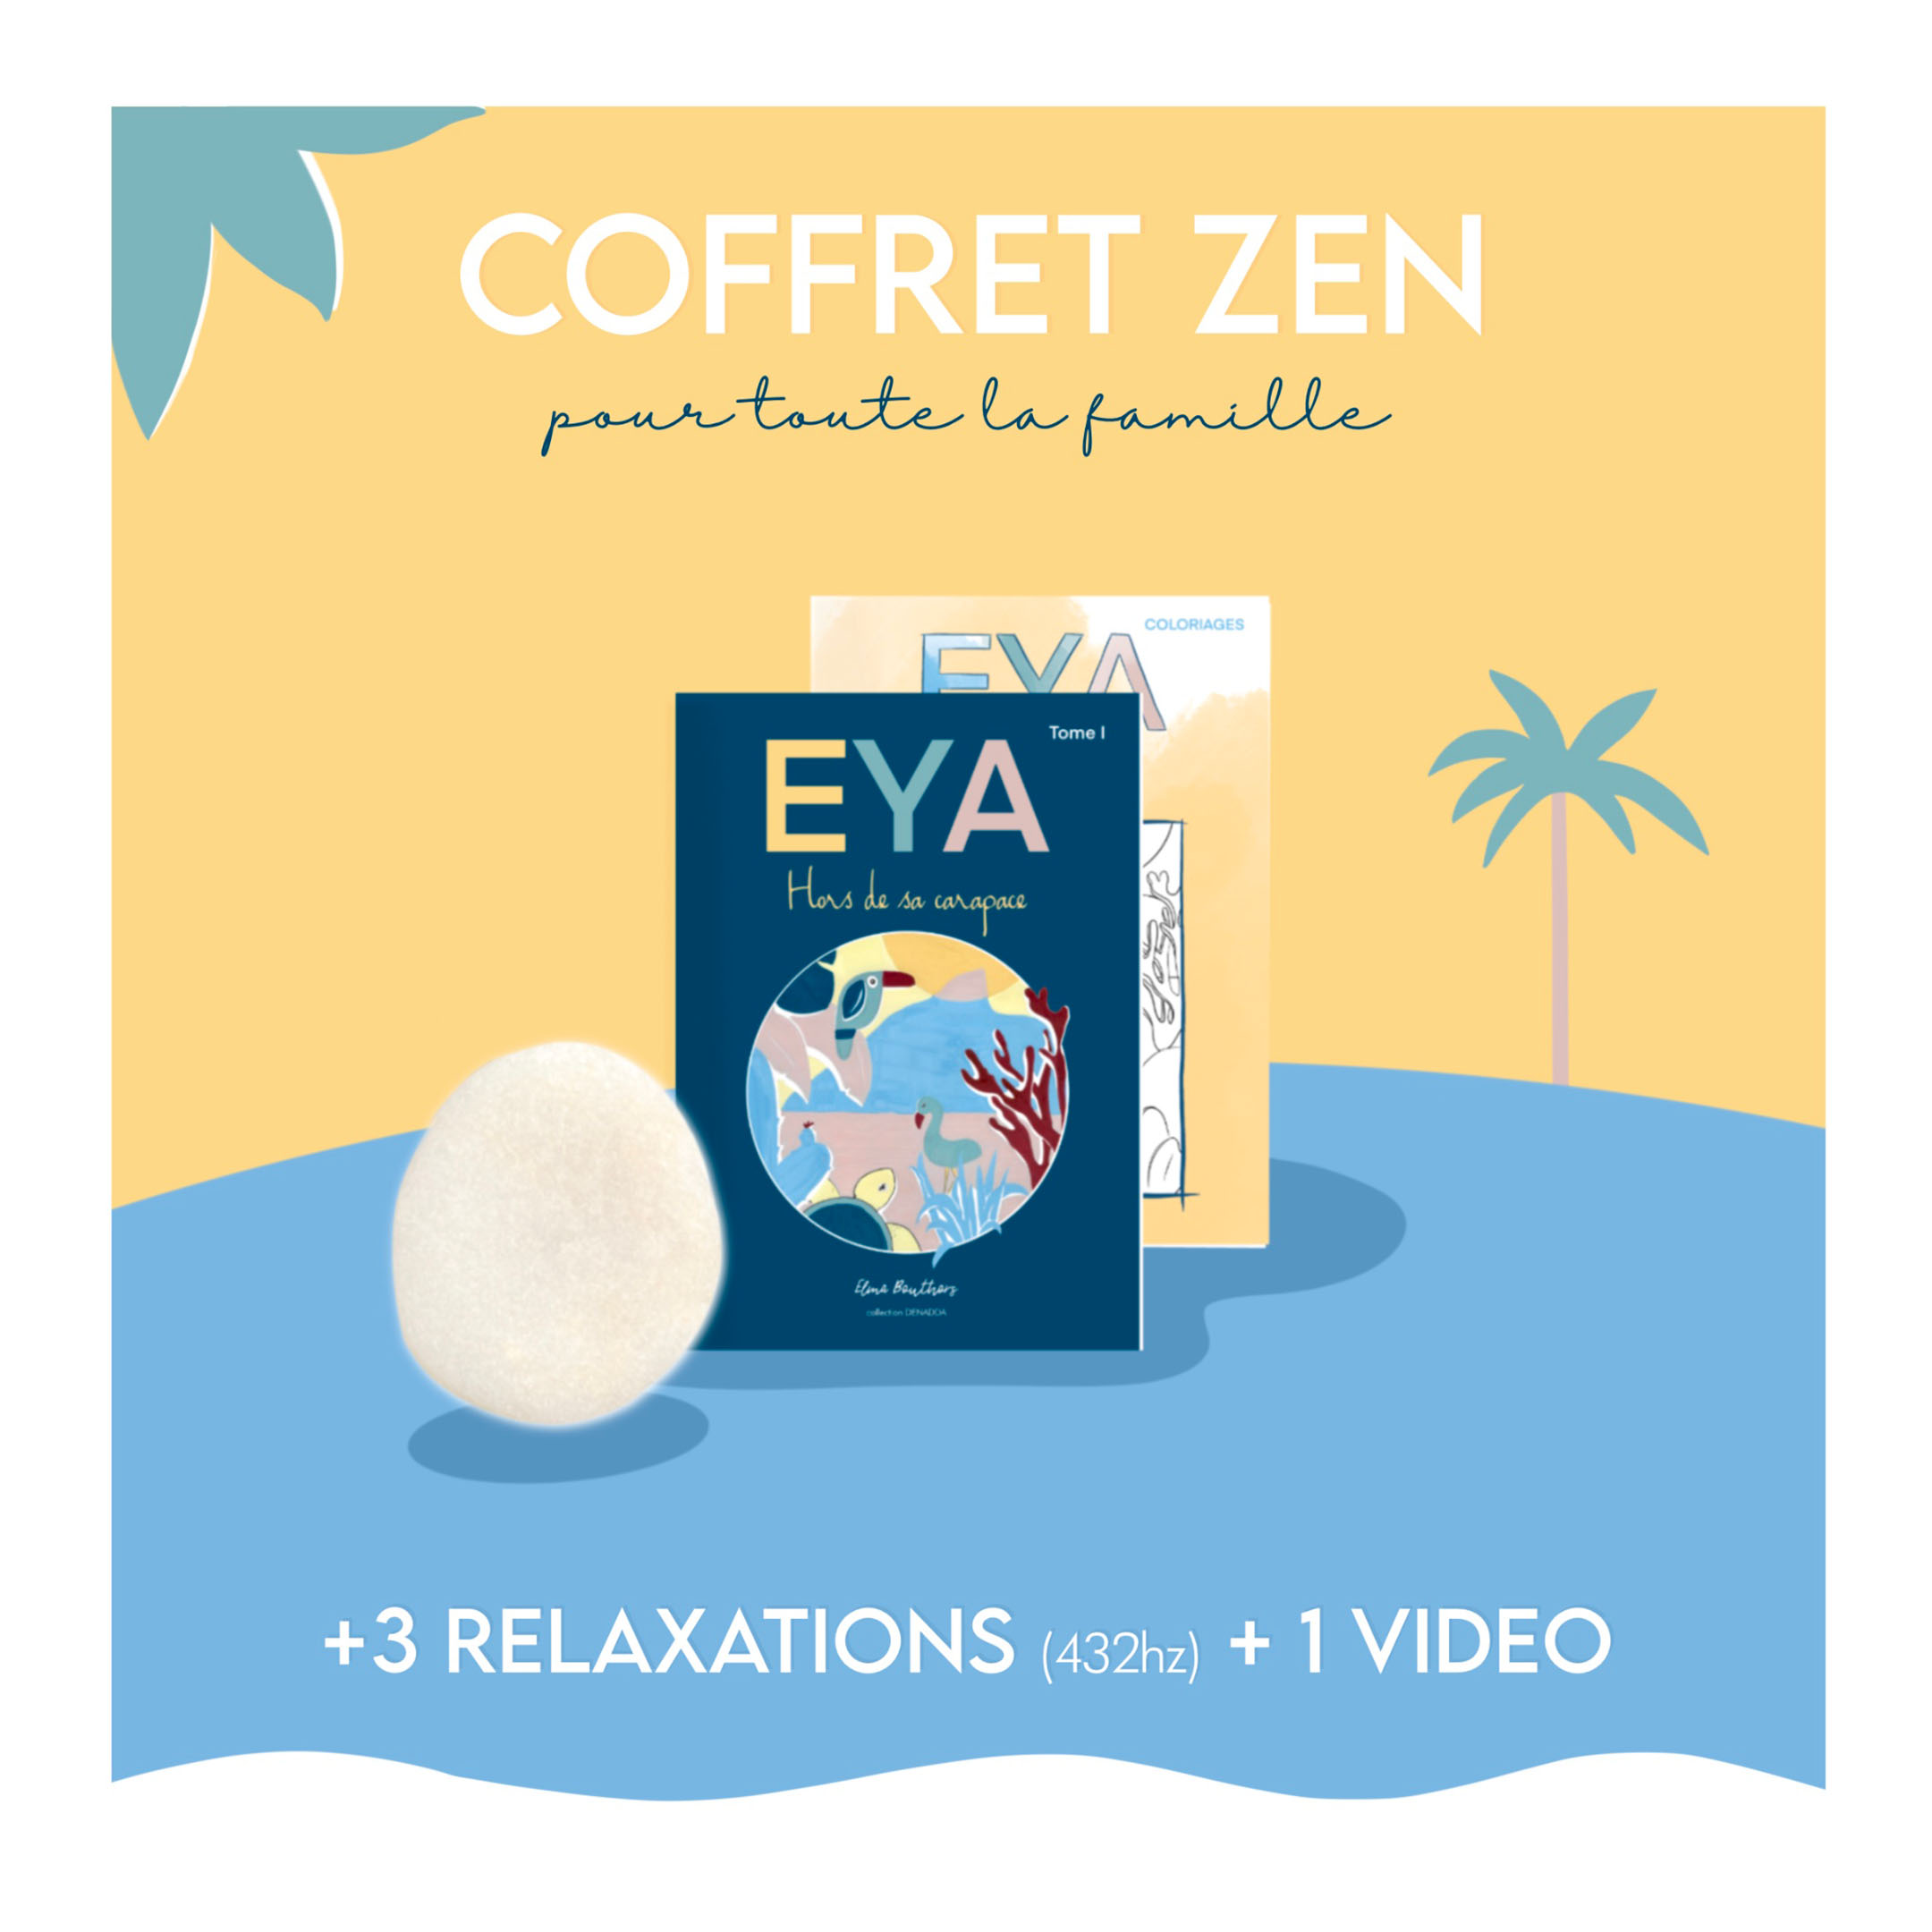 Coffret zen pour se détendre avec EYA et ses relaxations guidées, livre et coloriages pour toute la famille. Collection DENADDA